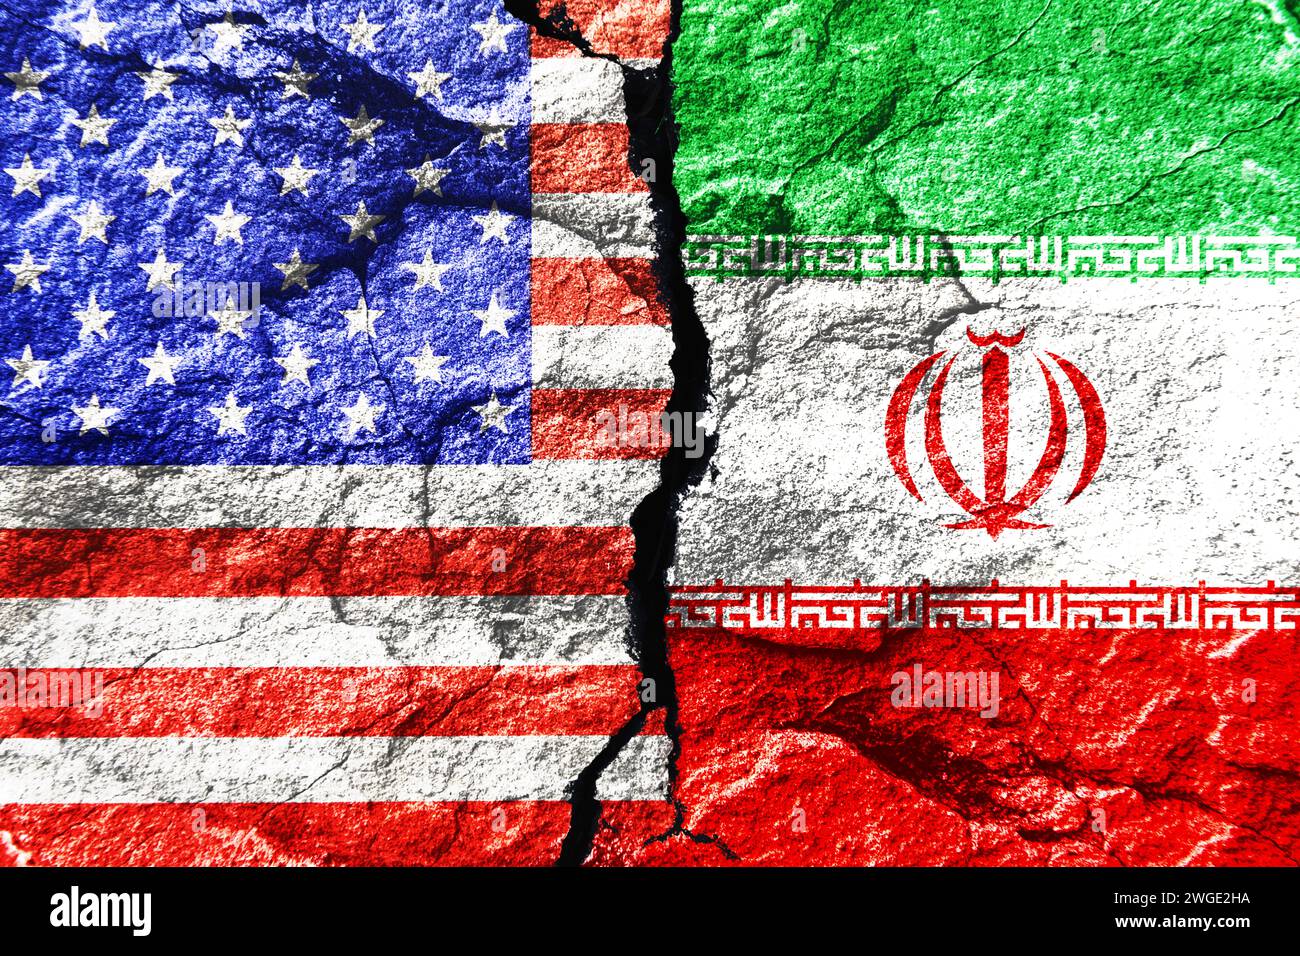 Drapeaux des États-Unis et de l'Iran sur Un terrain brisé, assemblage de photos Banque D'Images